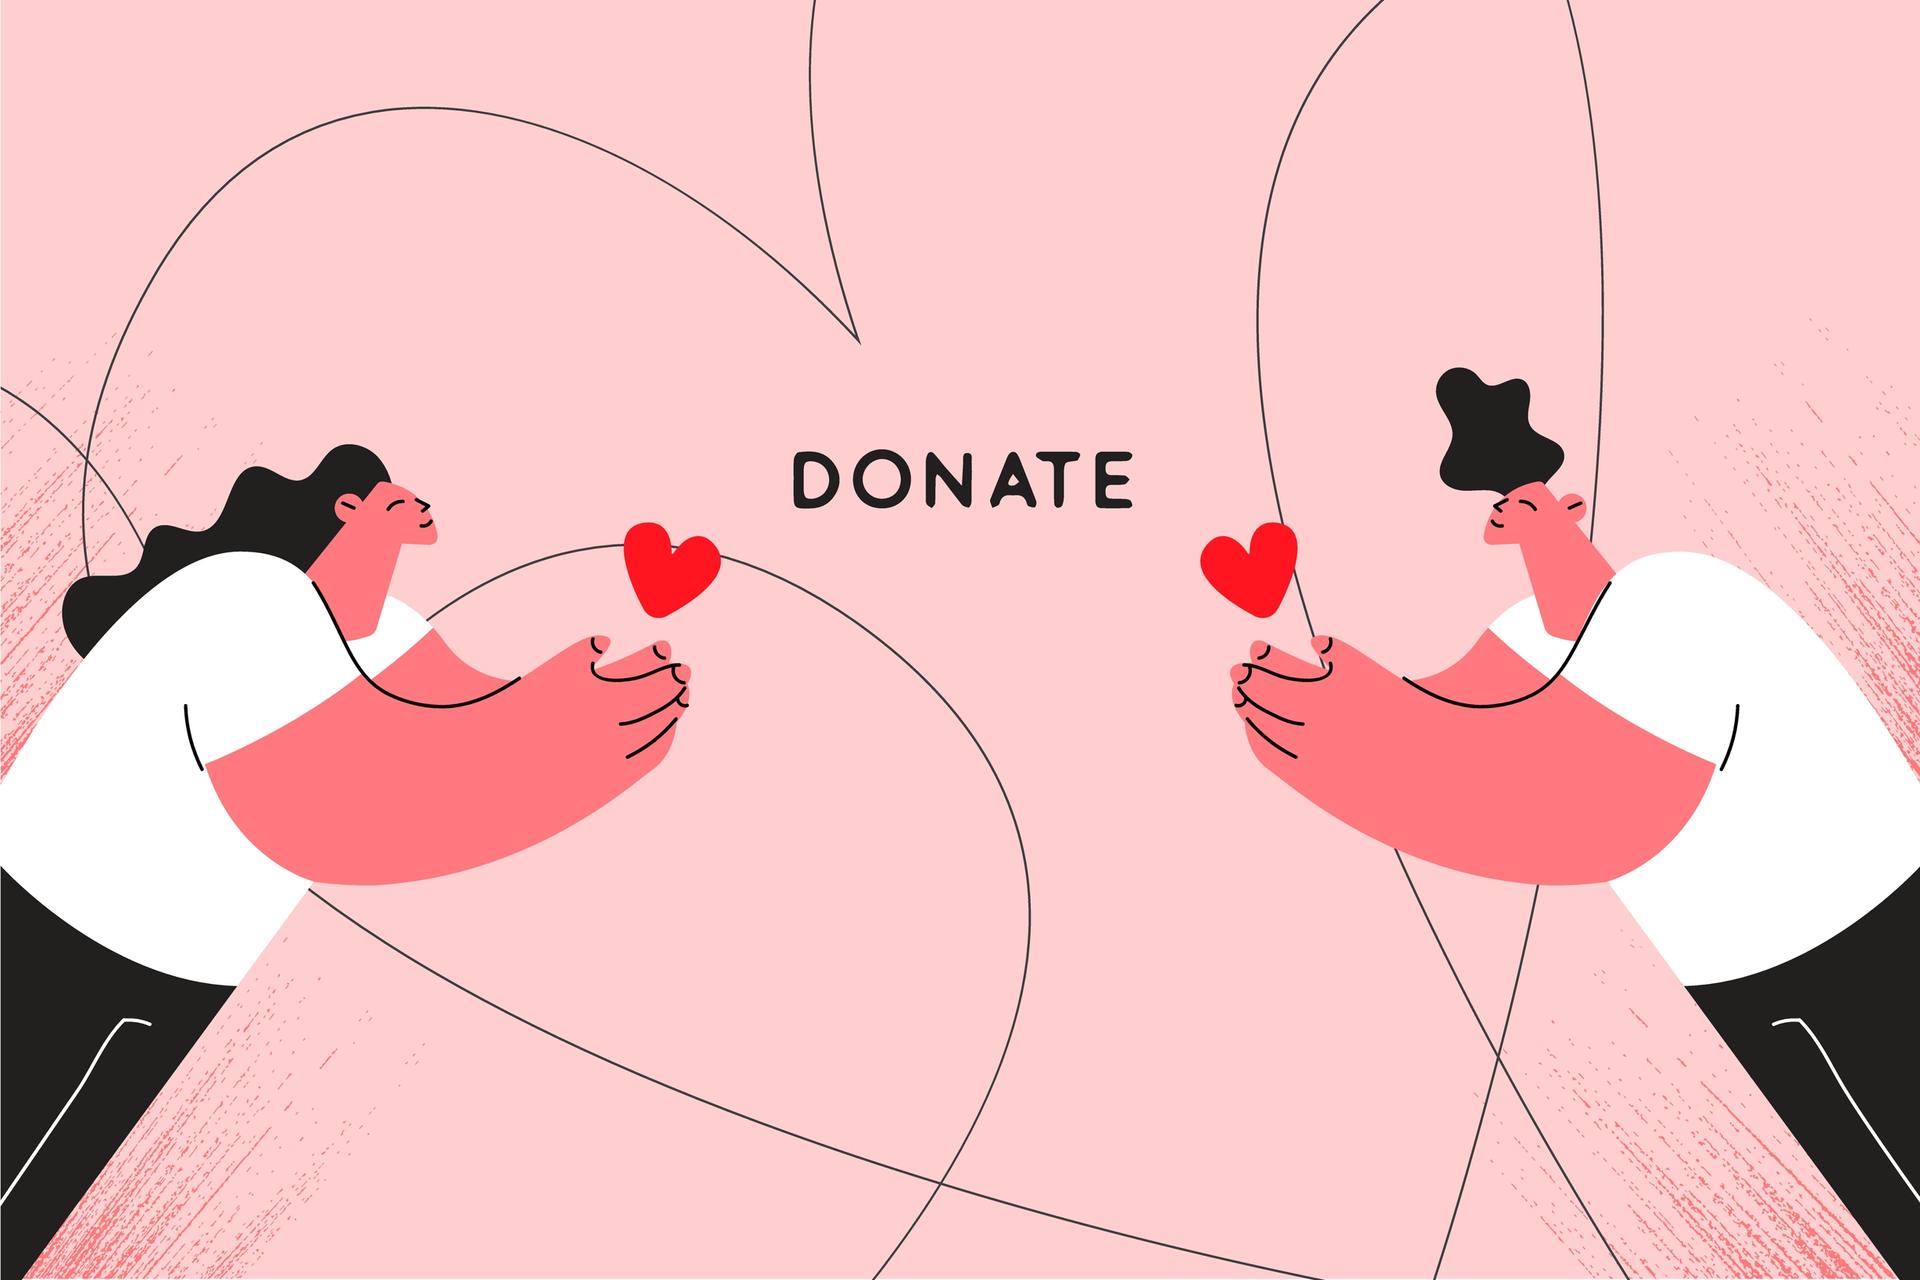 Zwei Personen halten ein rotes Herz in Richtung des mittigen Schriftzuges "Donate".